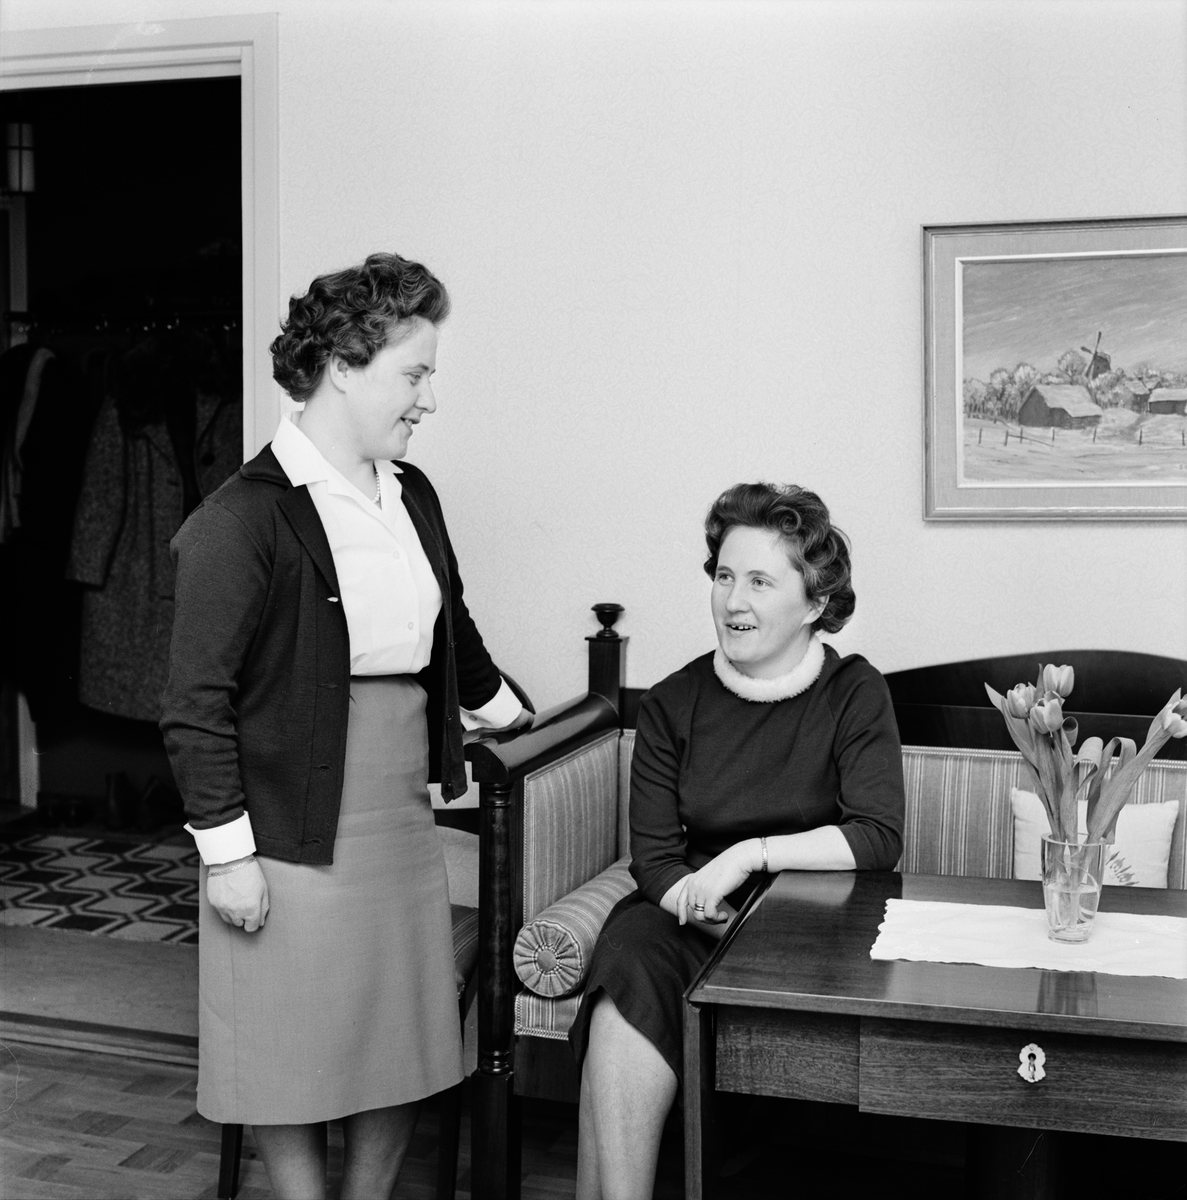 Tvillingsystrarna Aina Carlsson och Maj Nordlund, hemsystrar i  Danmarks socken, Uppland mars 1963